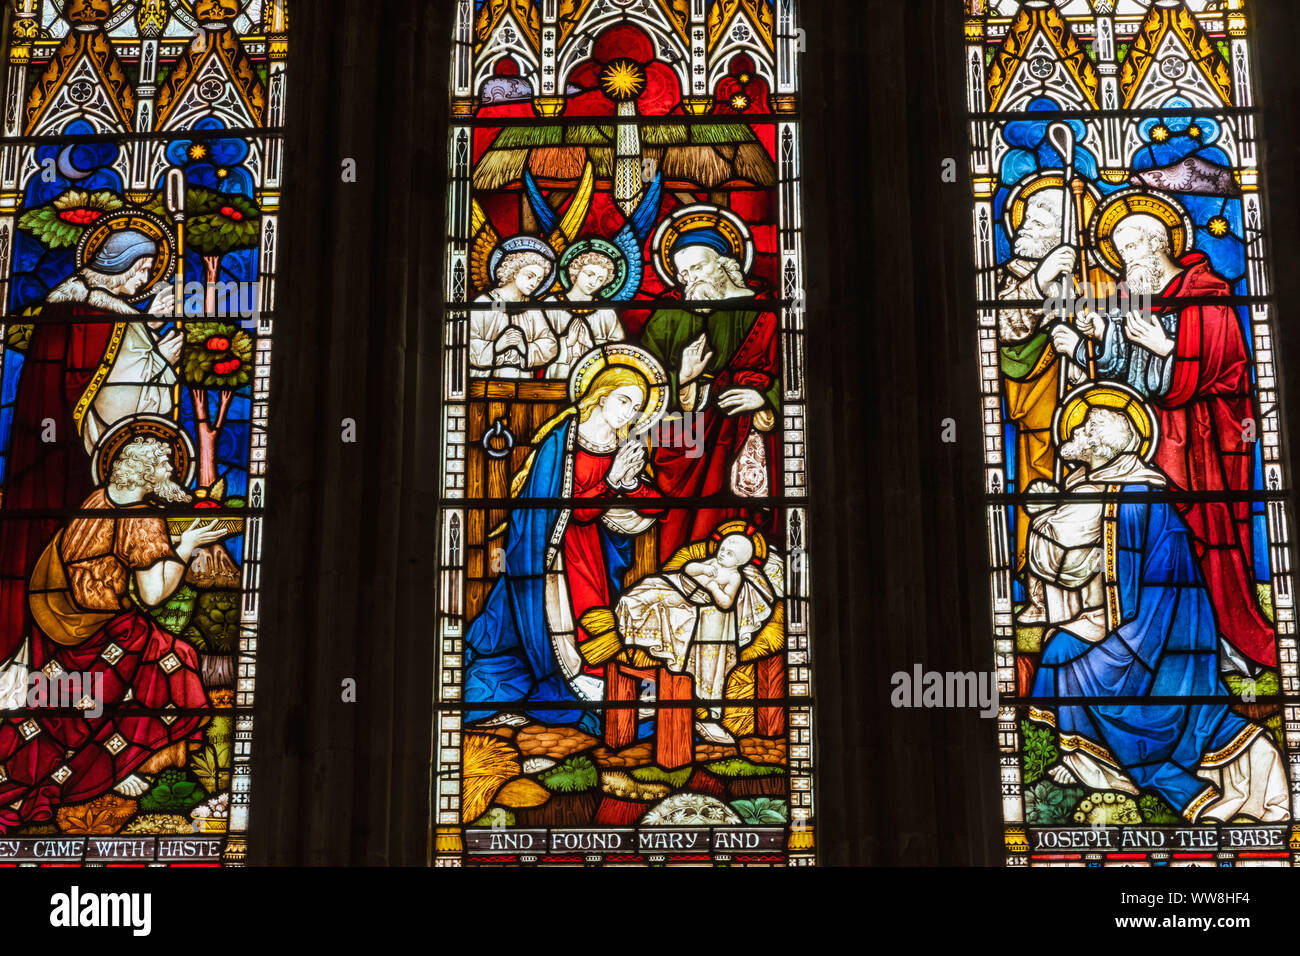 L'Angleterre, dans le Hampshire, Romsey, Abbaye de Romsey, vitrail représentant la Nativité Banque D'Images